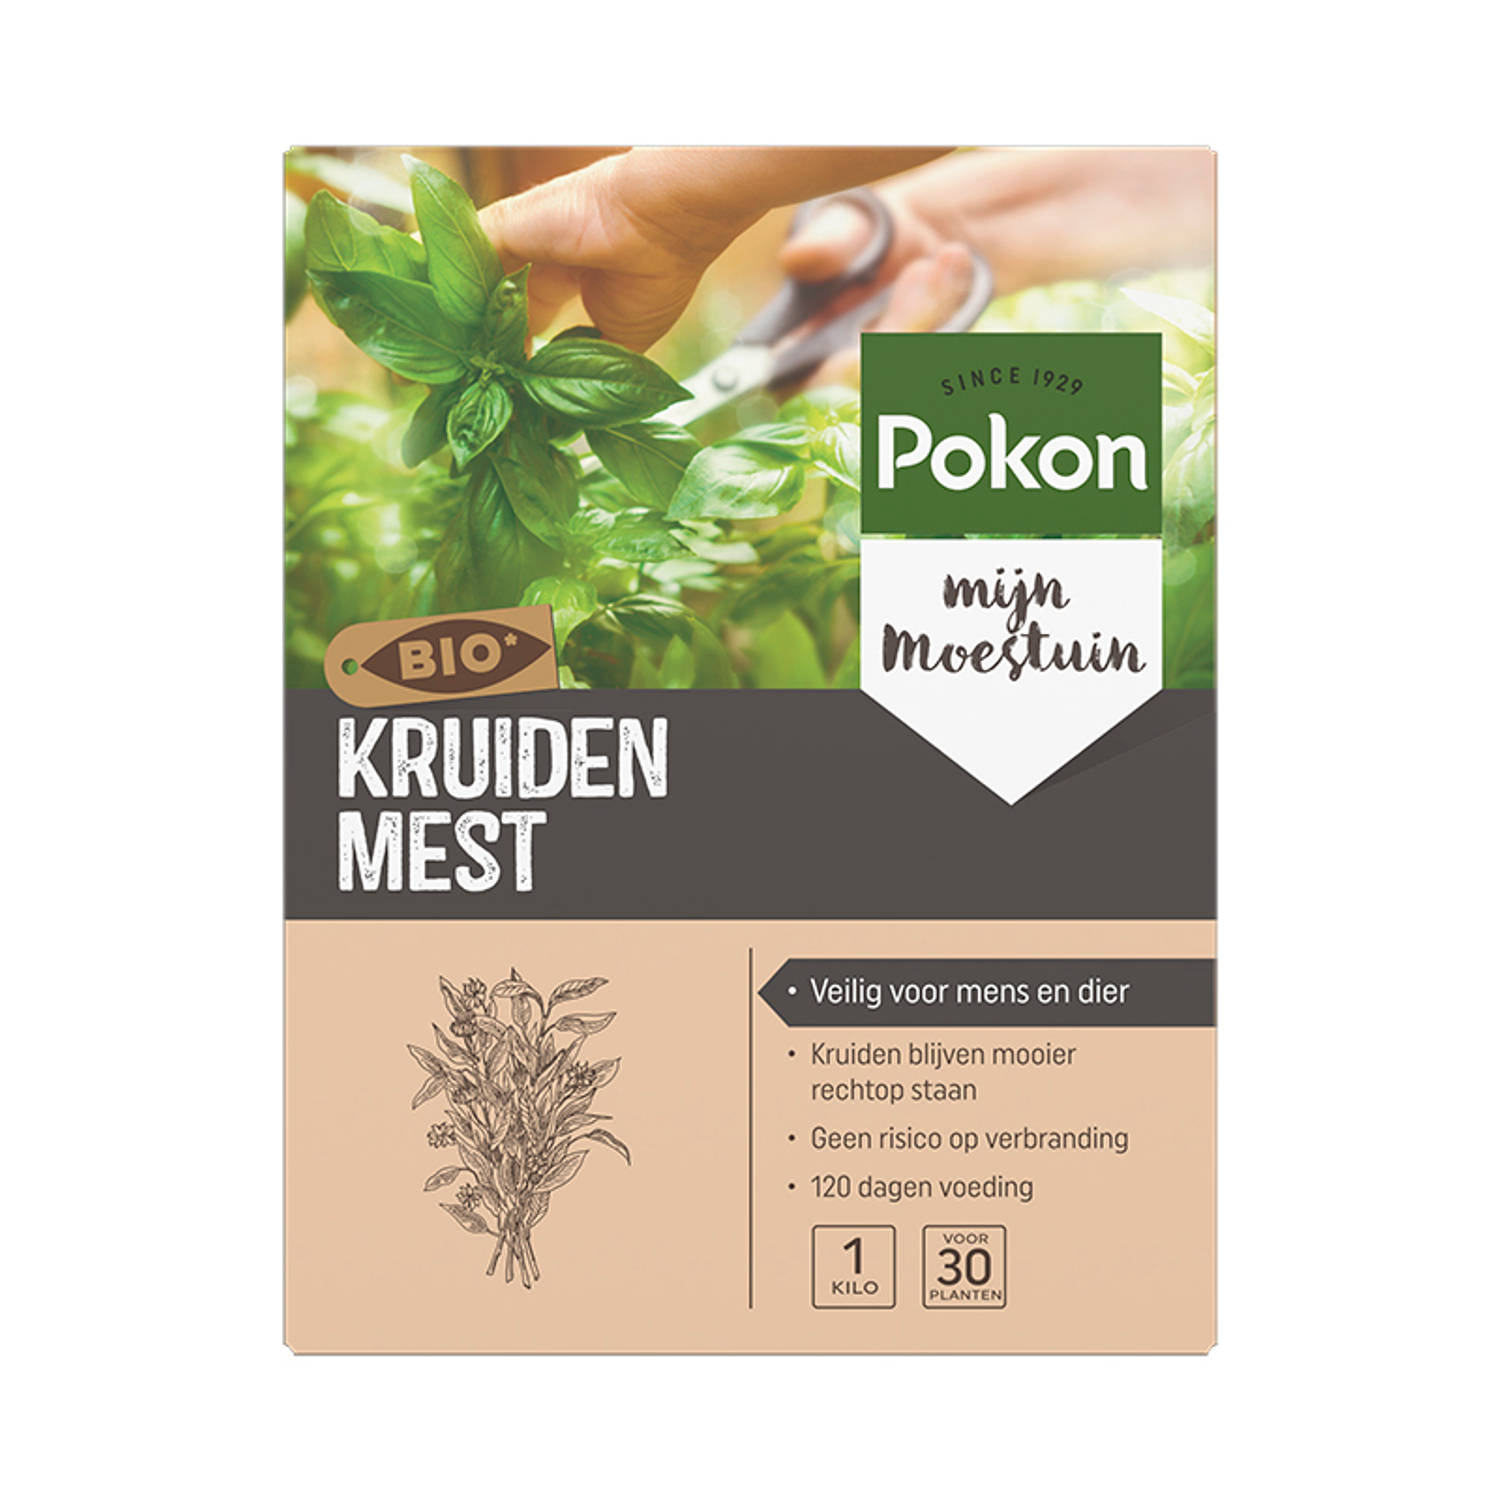 Pokon Bio lavendel & kruiden voeding 1 kg